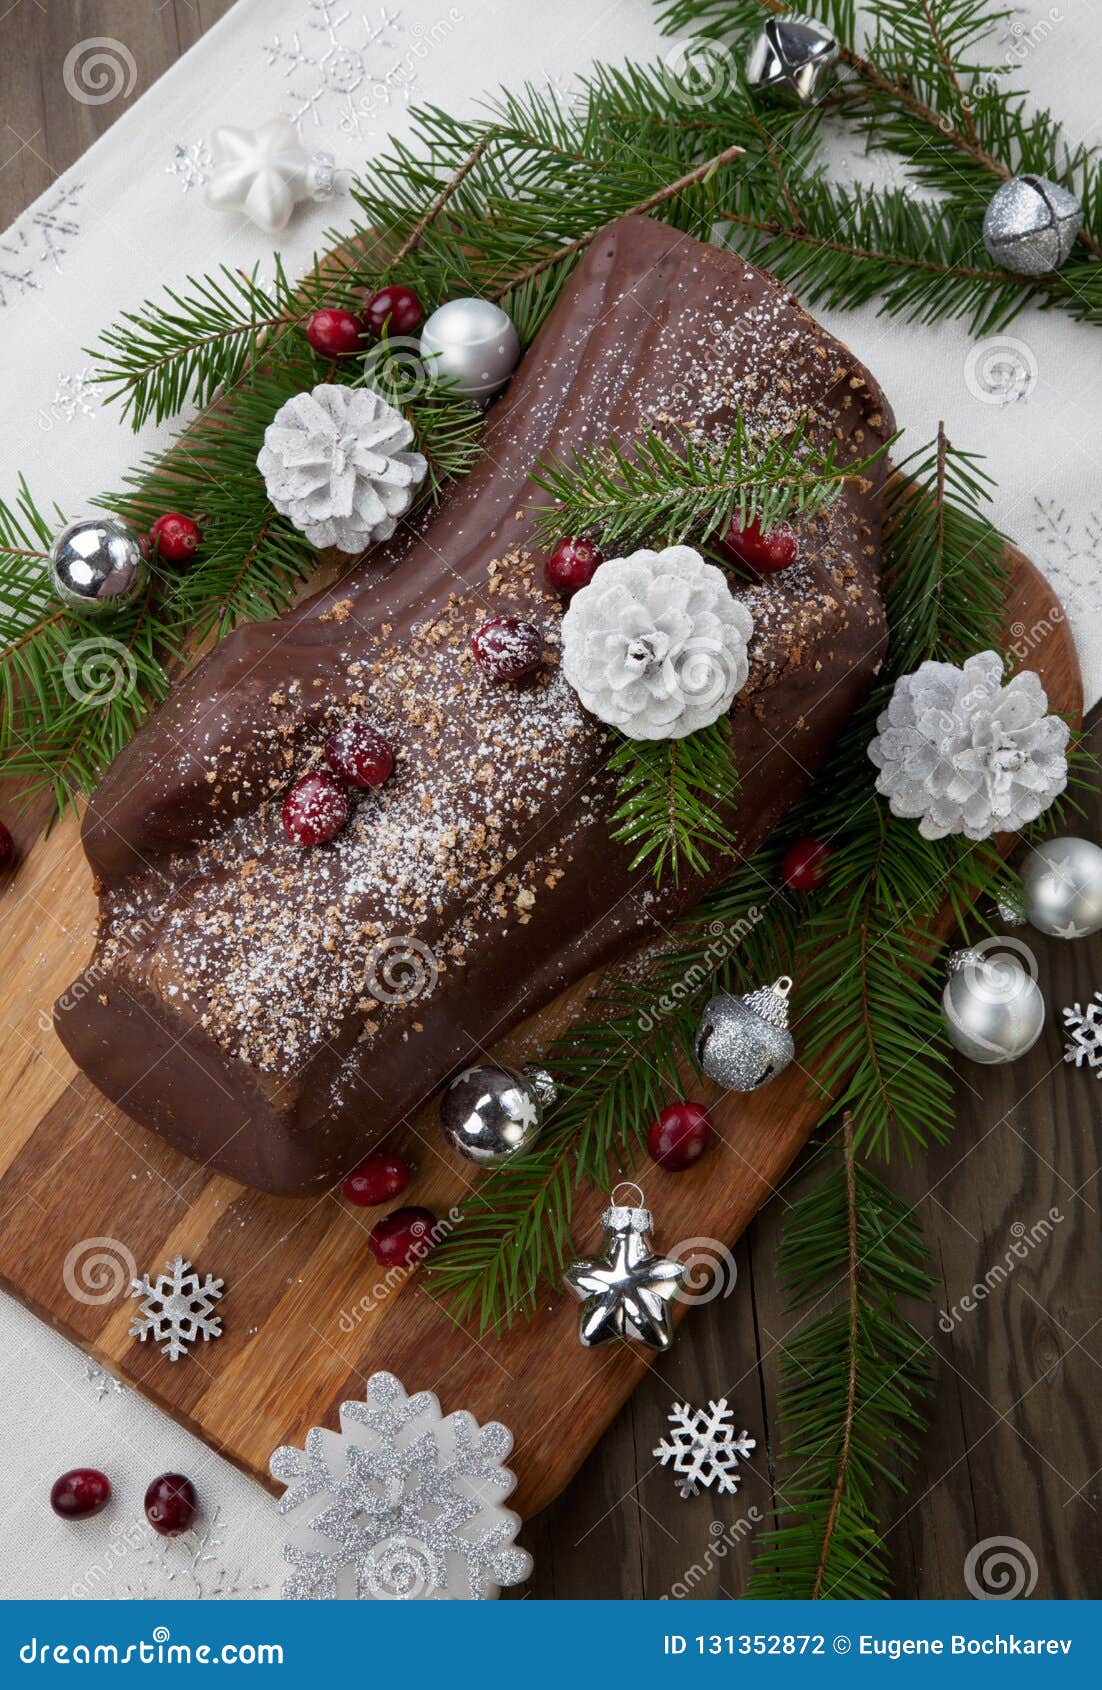 Christmas Chocolate Yule Log Cake Stock Photo - Image of christmas ...